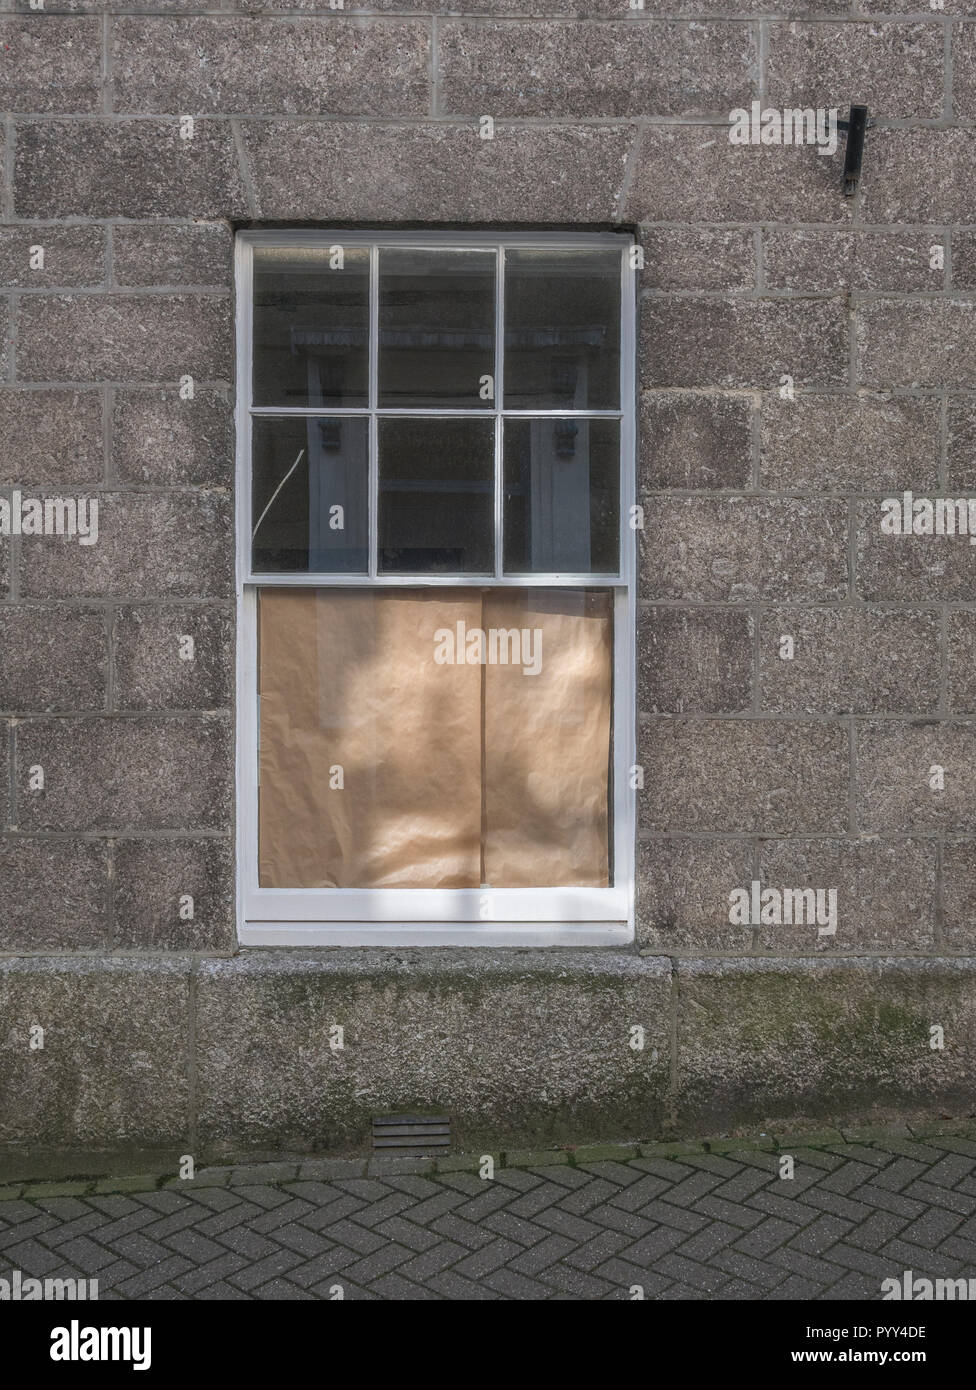 Vecchia finestra a ghigliottina coperti con carta marrone. Metafora vista bloccata, limita la visibilità in condizioni di scarsa visibilità. Foto Stock